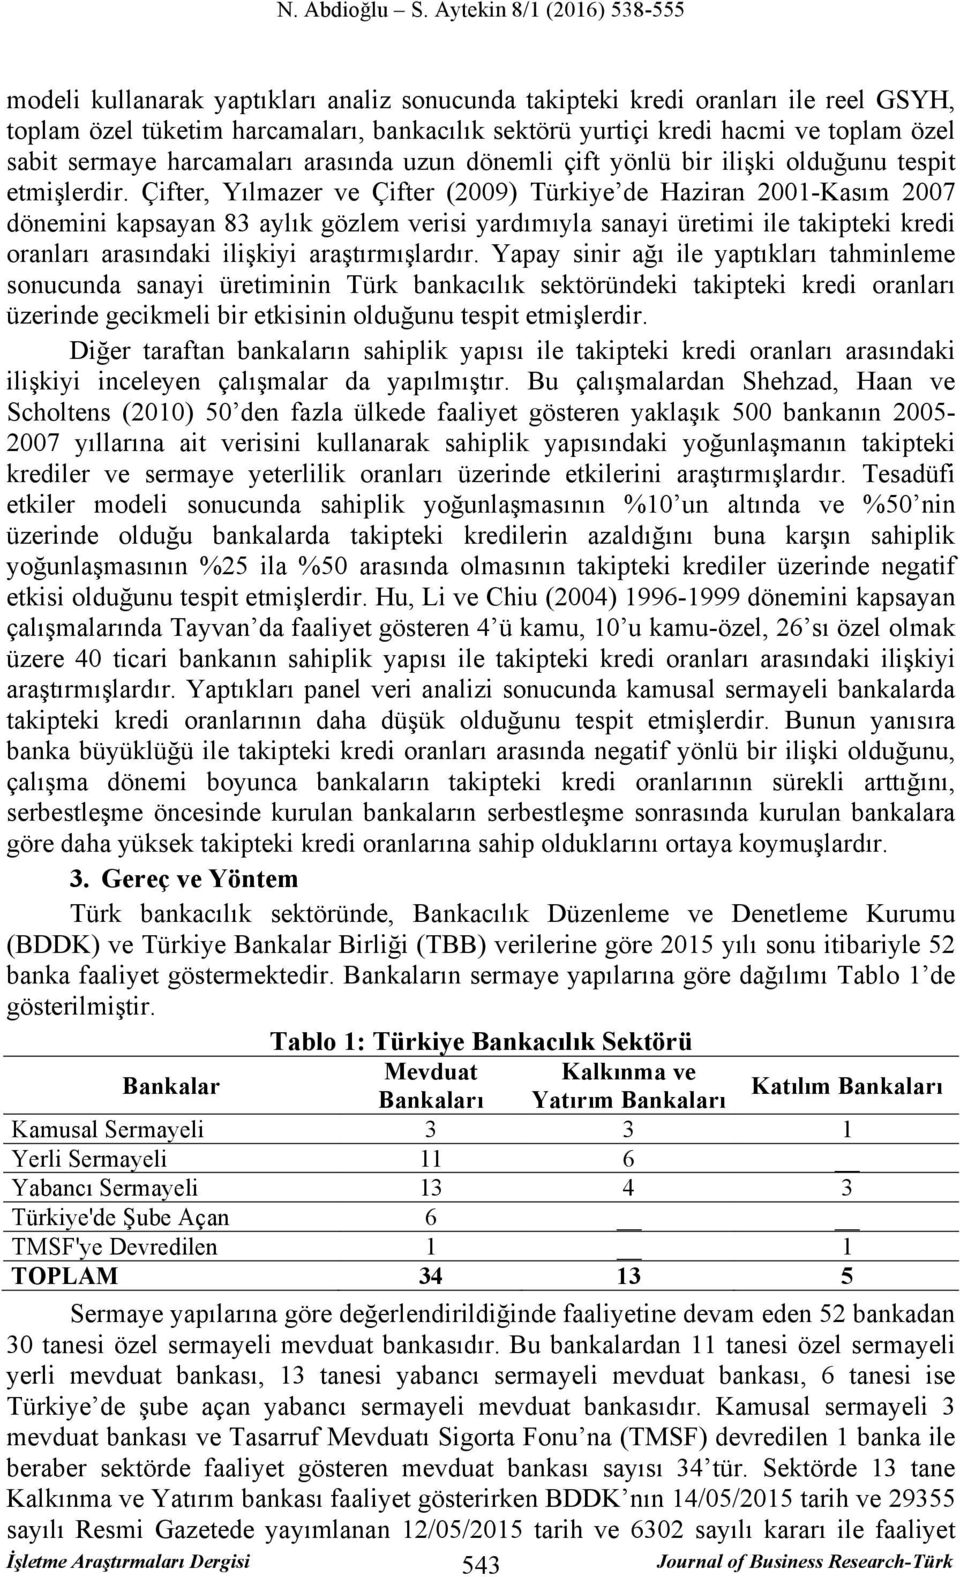 Çifter, Yılmazer ve Çifter (2009) Türkiye de Haziran 2001-Kasım 2007 dönemini kapsayan 83 aylık gözlem verisi yardımıyla sanayi üretimi ile takipteki kredi oranları arasındaki ilişkiyi